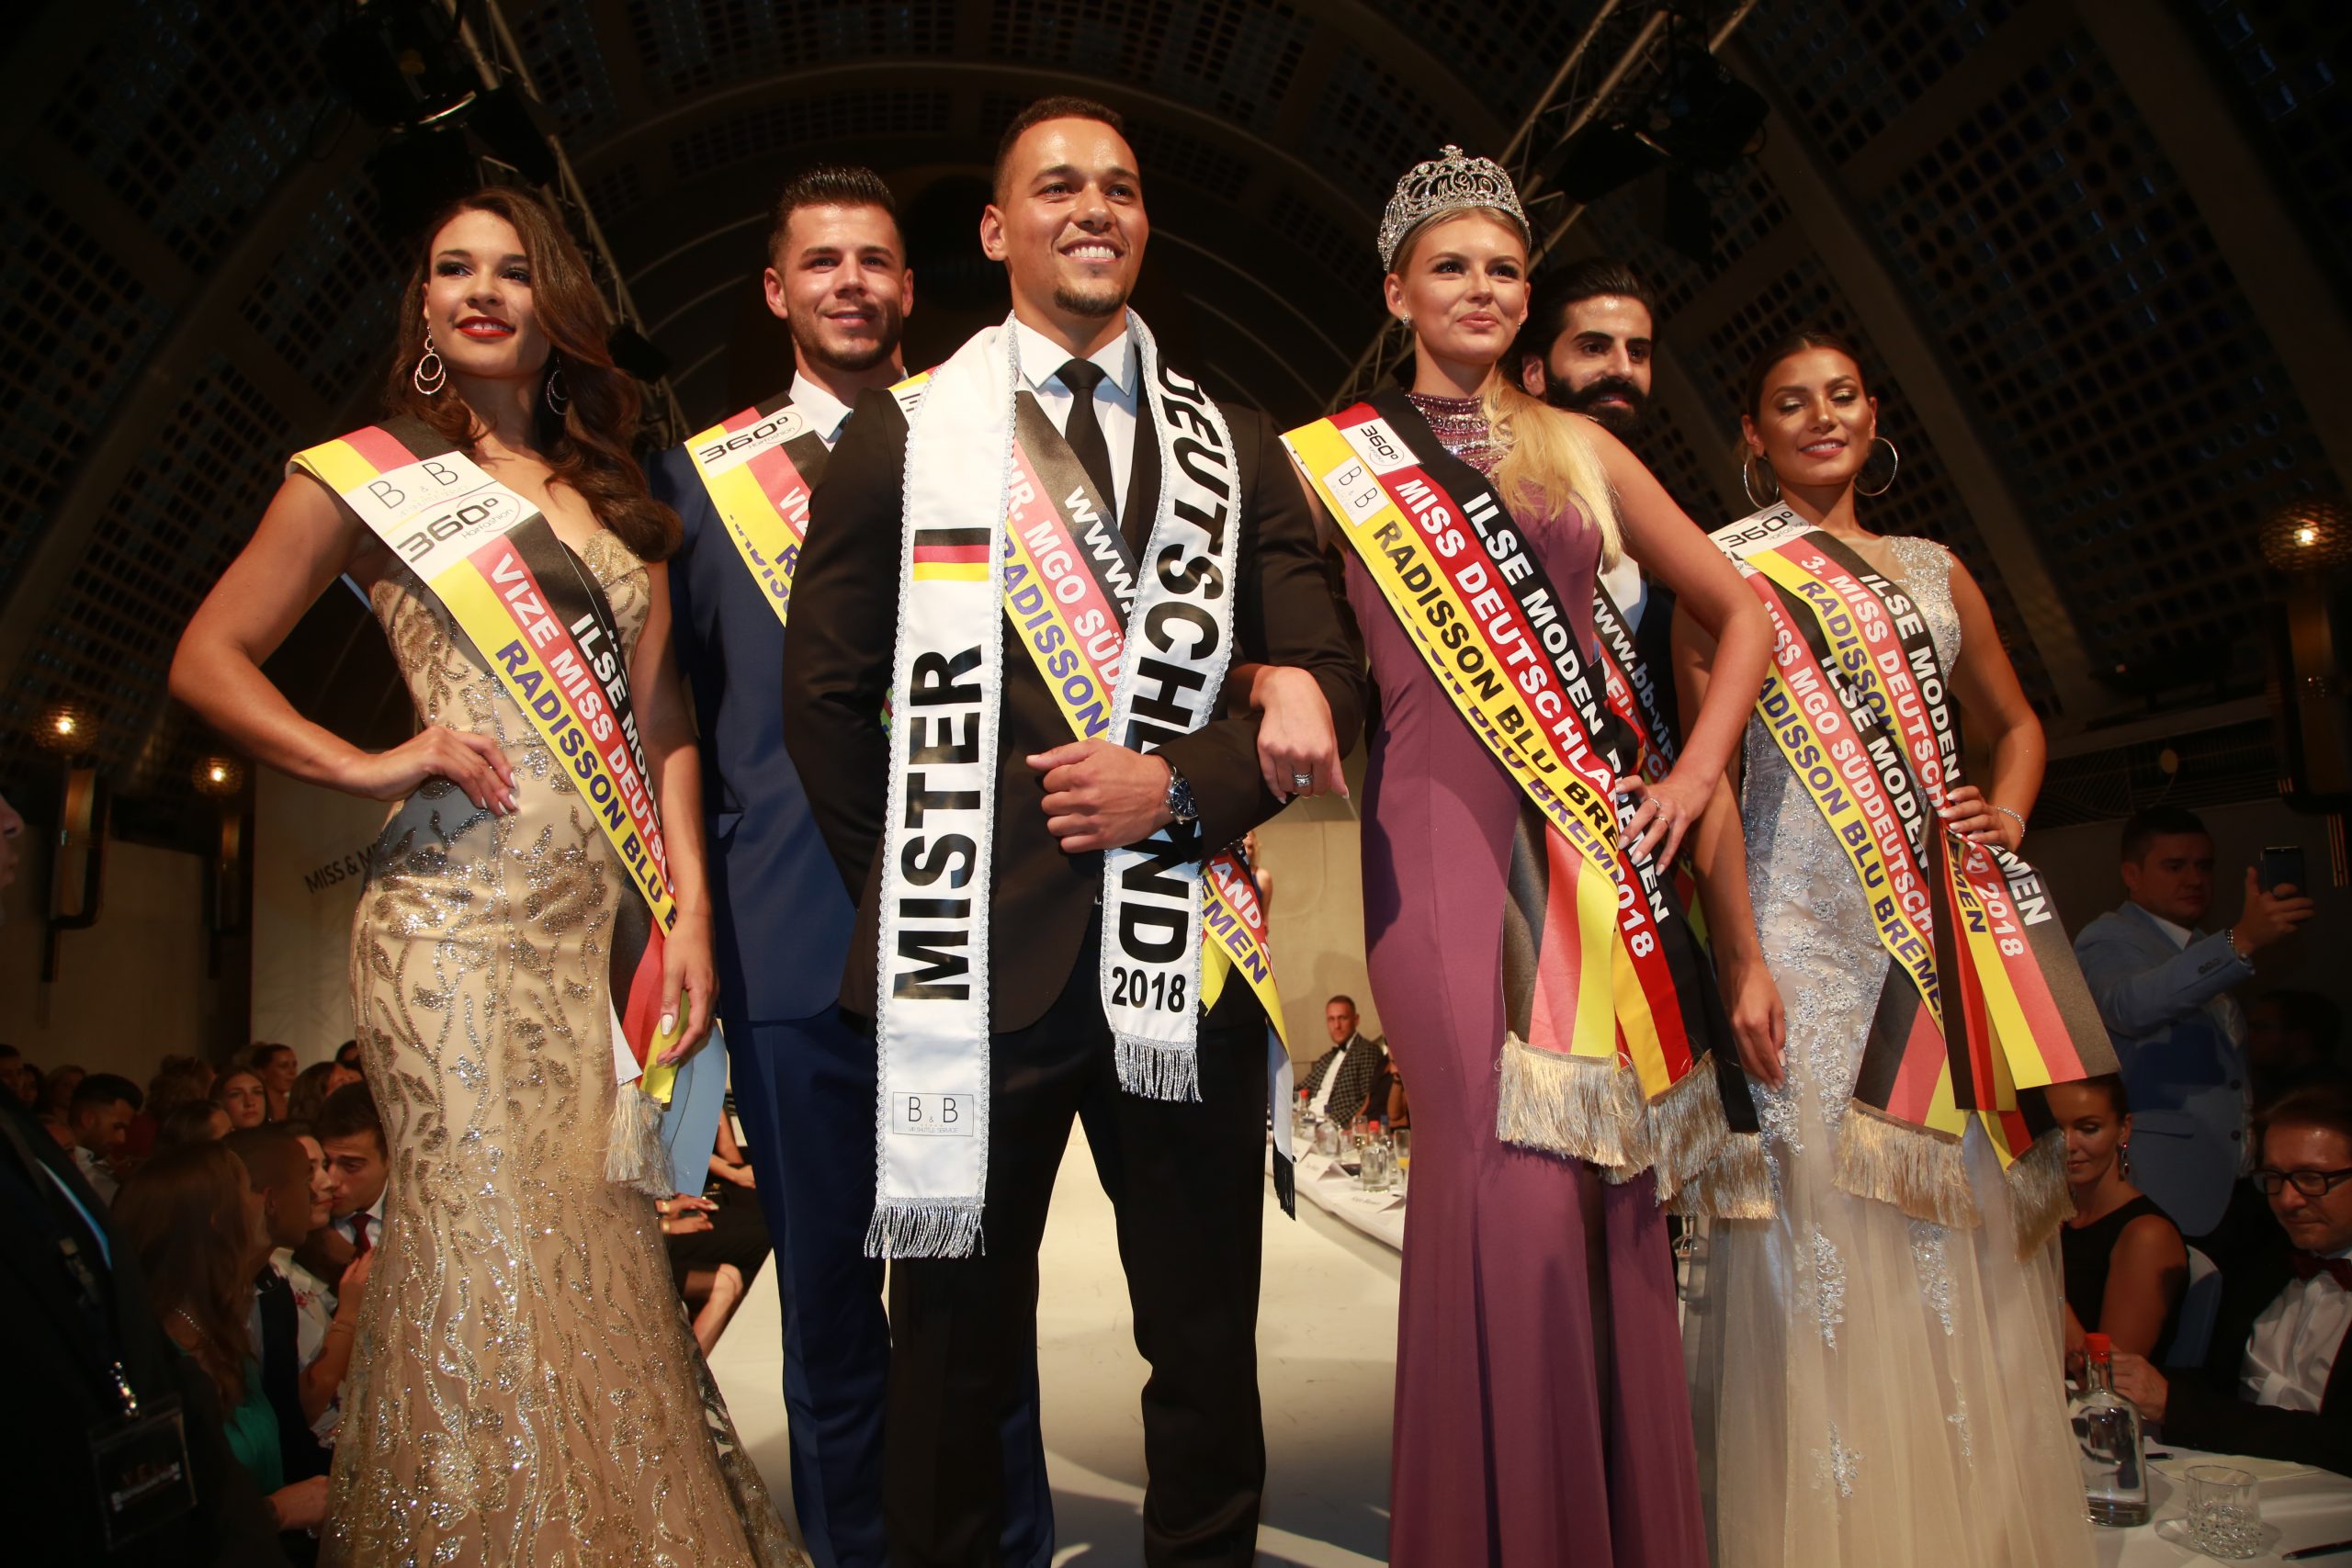 Glückwunsch an die Sieger Miss Organisation – Mr. 2018 MGO-Miss Deutschland Germany 